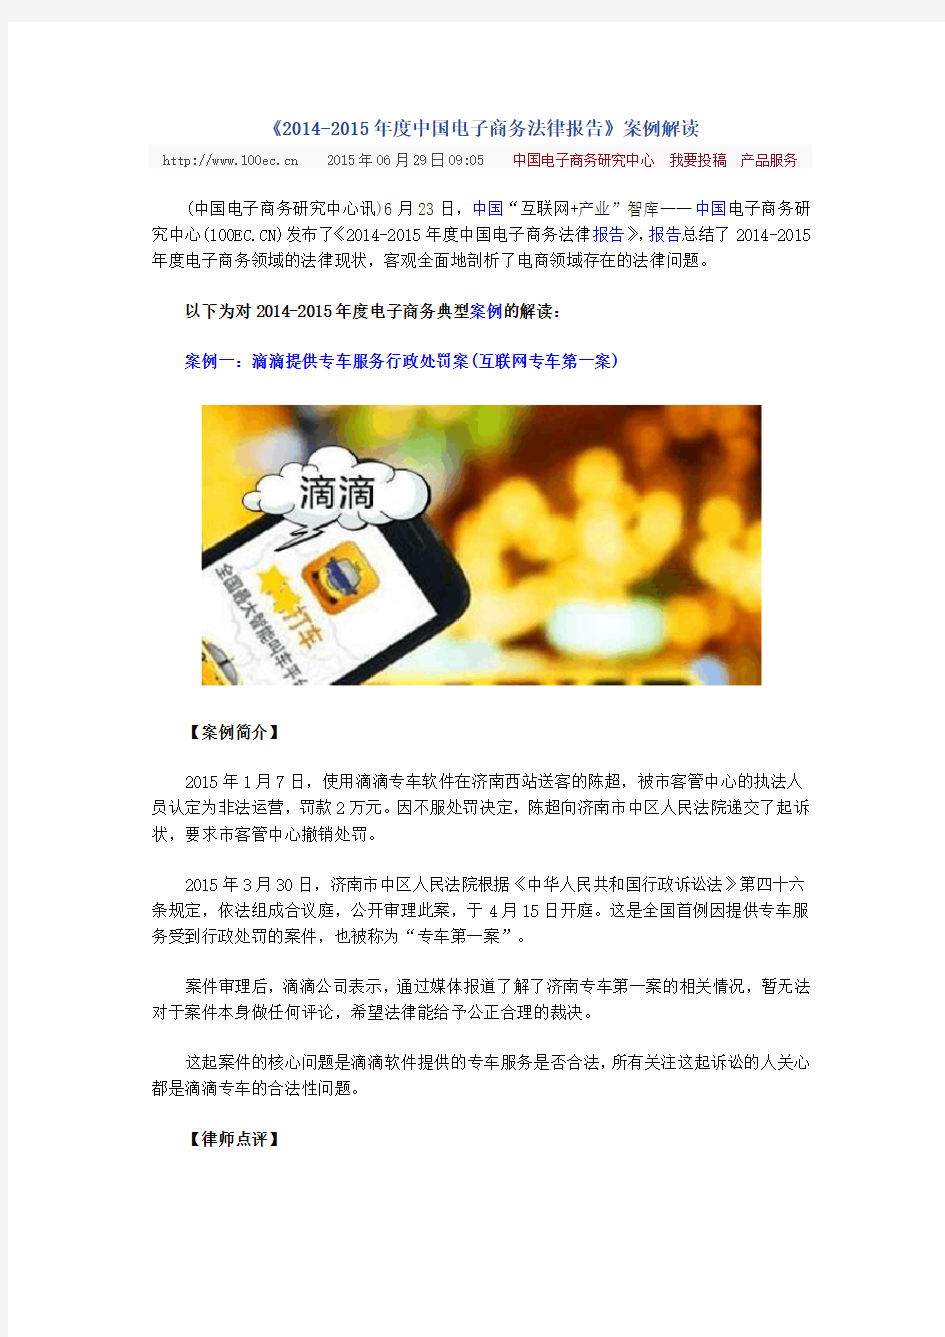 《2014-2015年度中国电子商务法律报告》案例解读